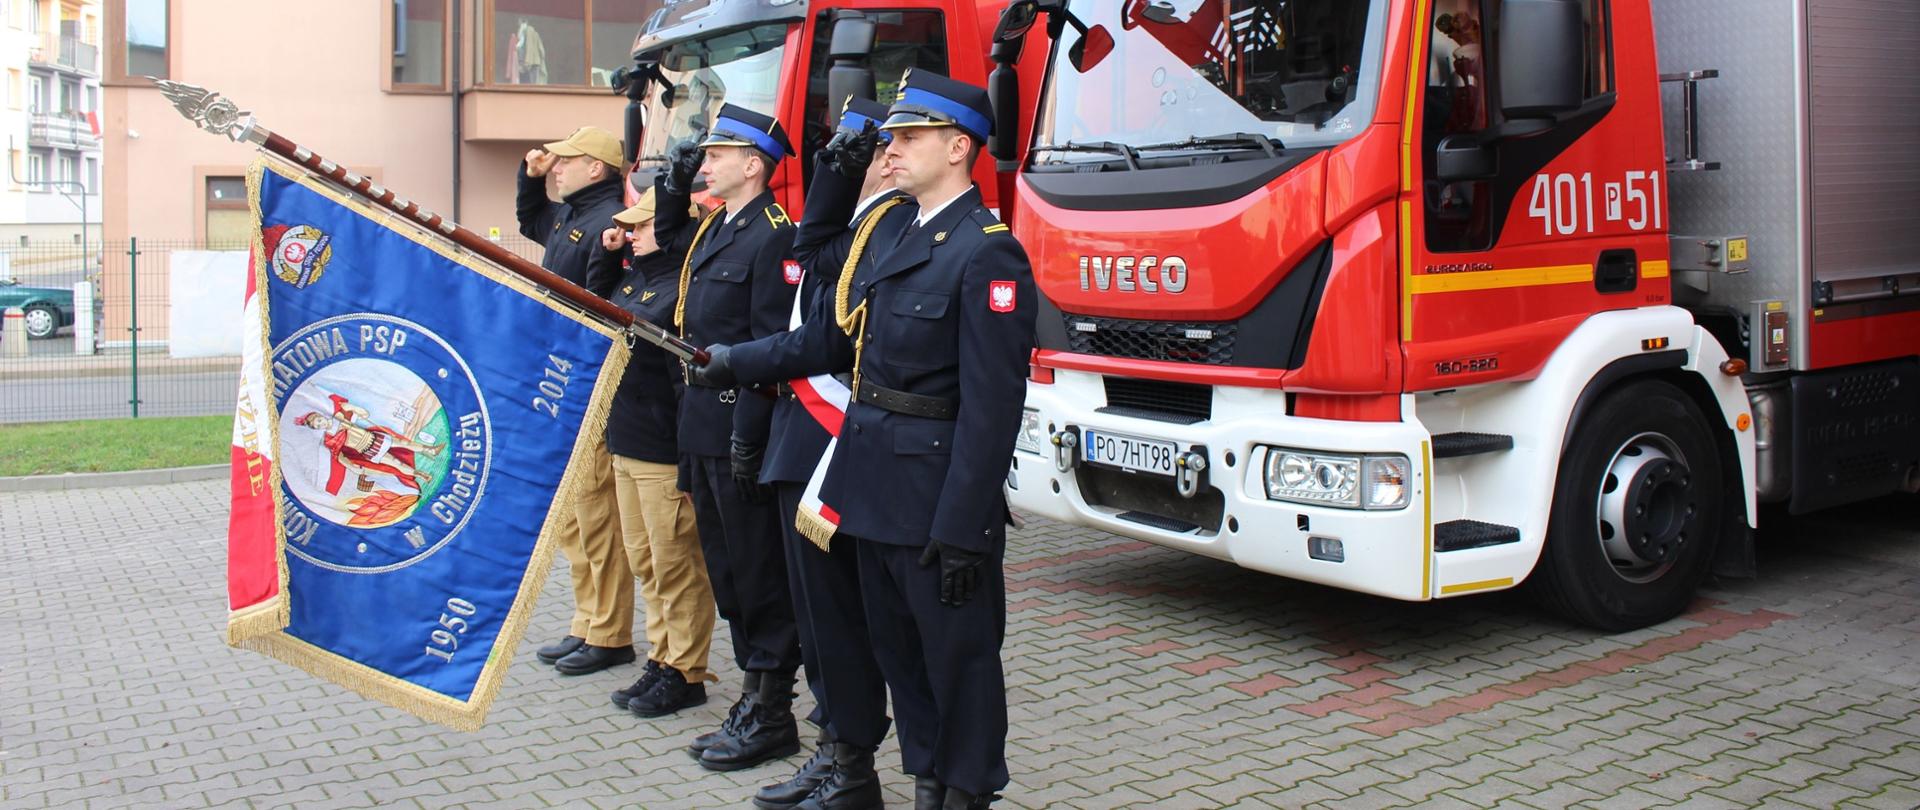 Zdjęcie przedstawia strażaków podczas uroczystości z okazji Święta Niepodległości.
W tle budynki.
